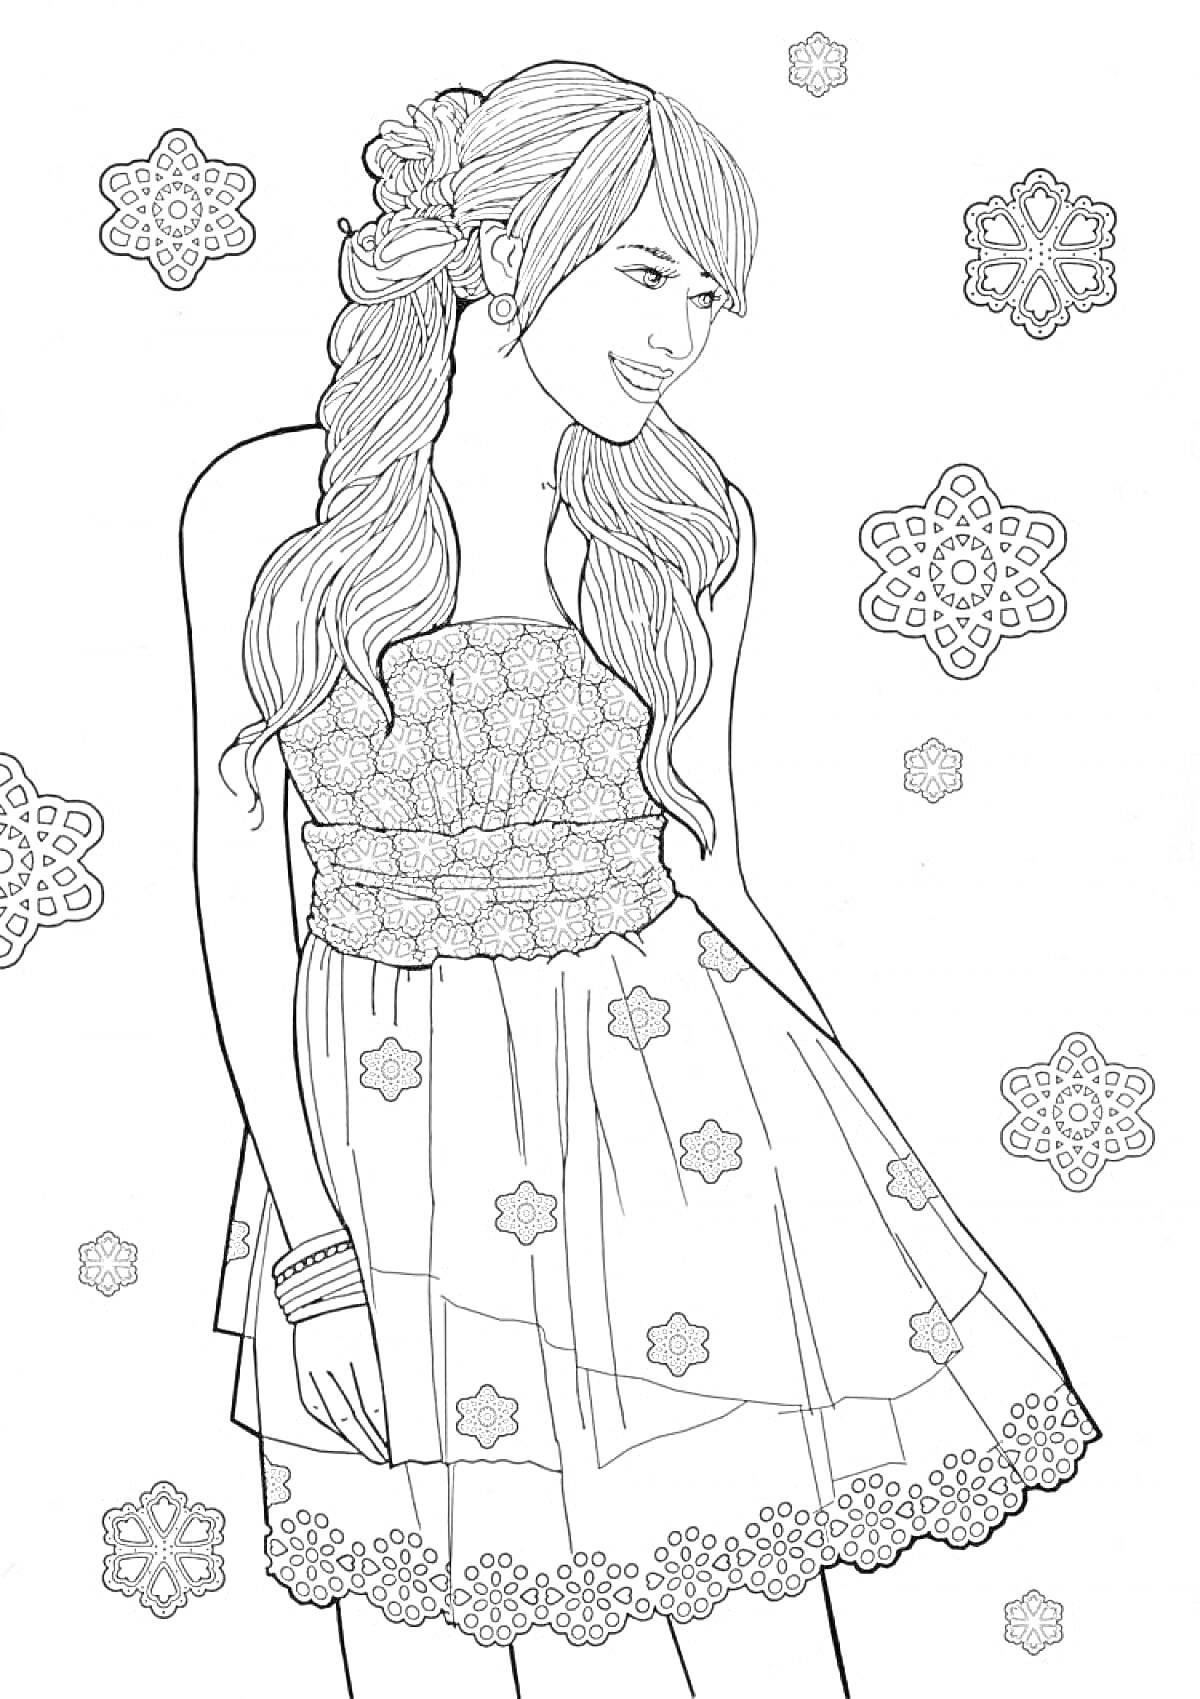 Раскраска Девушка в узорчатом платье с цветами волосах на фоне снежинок